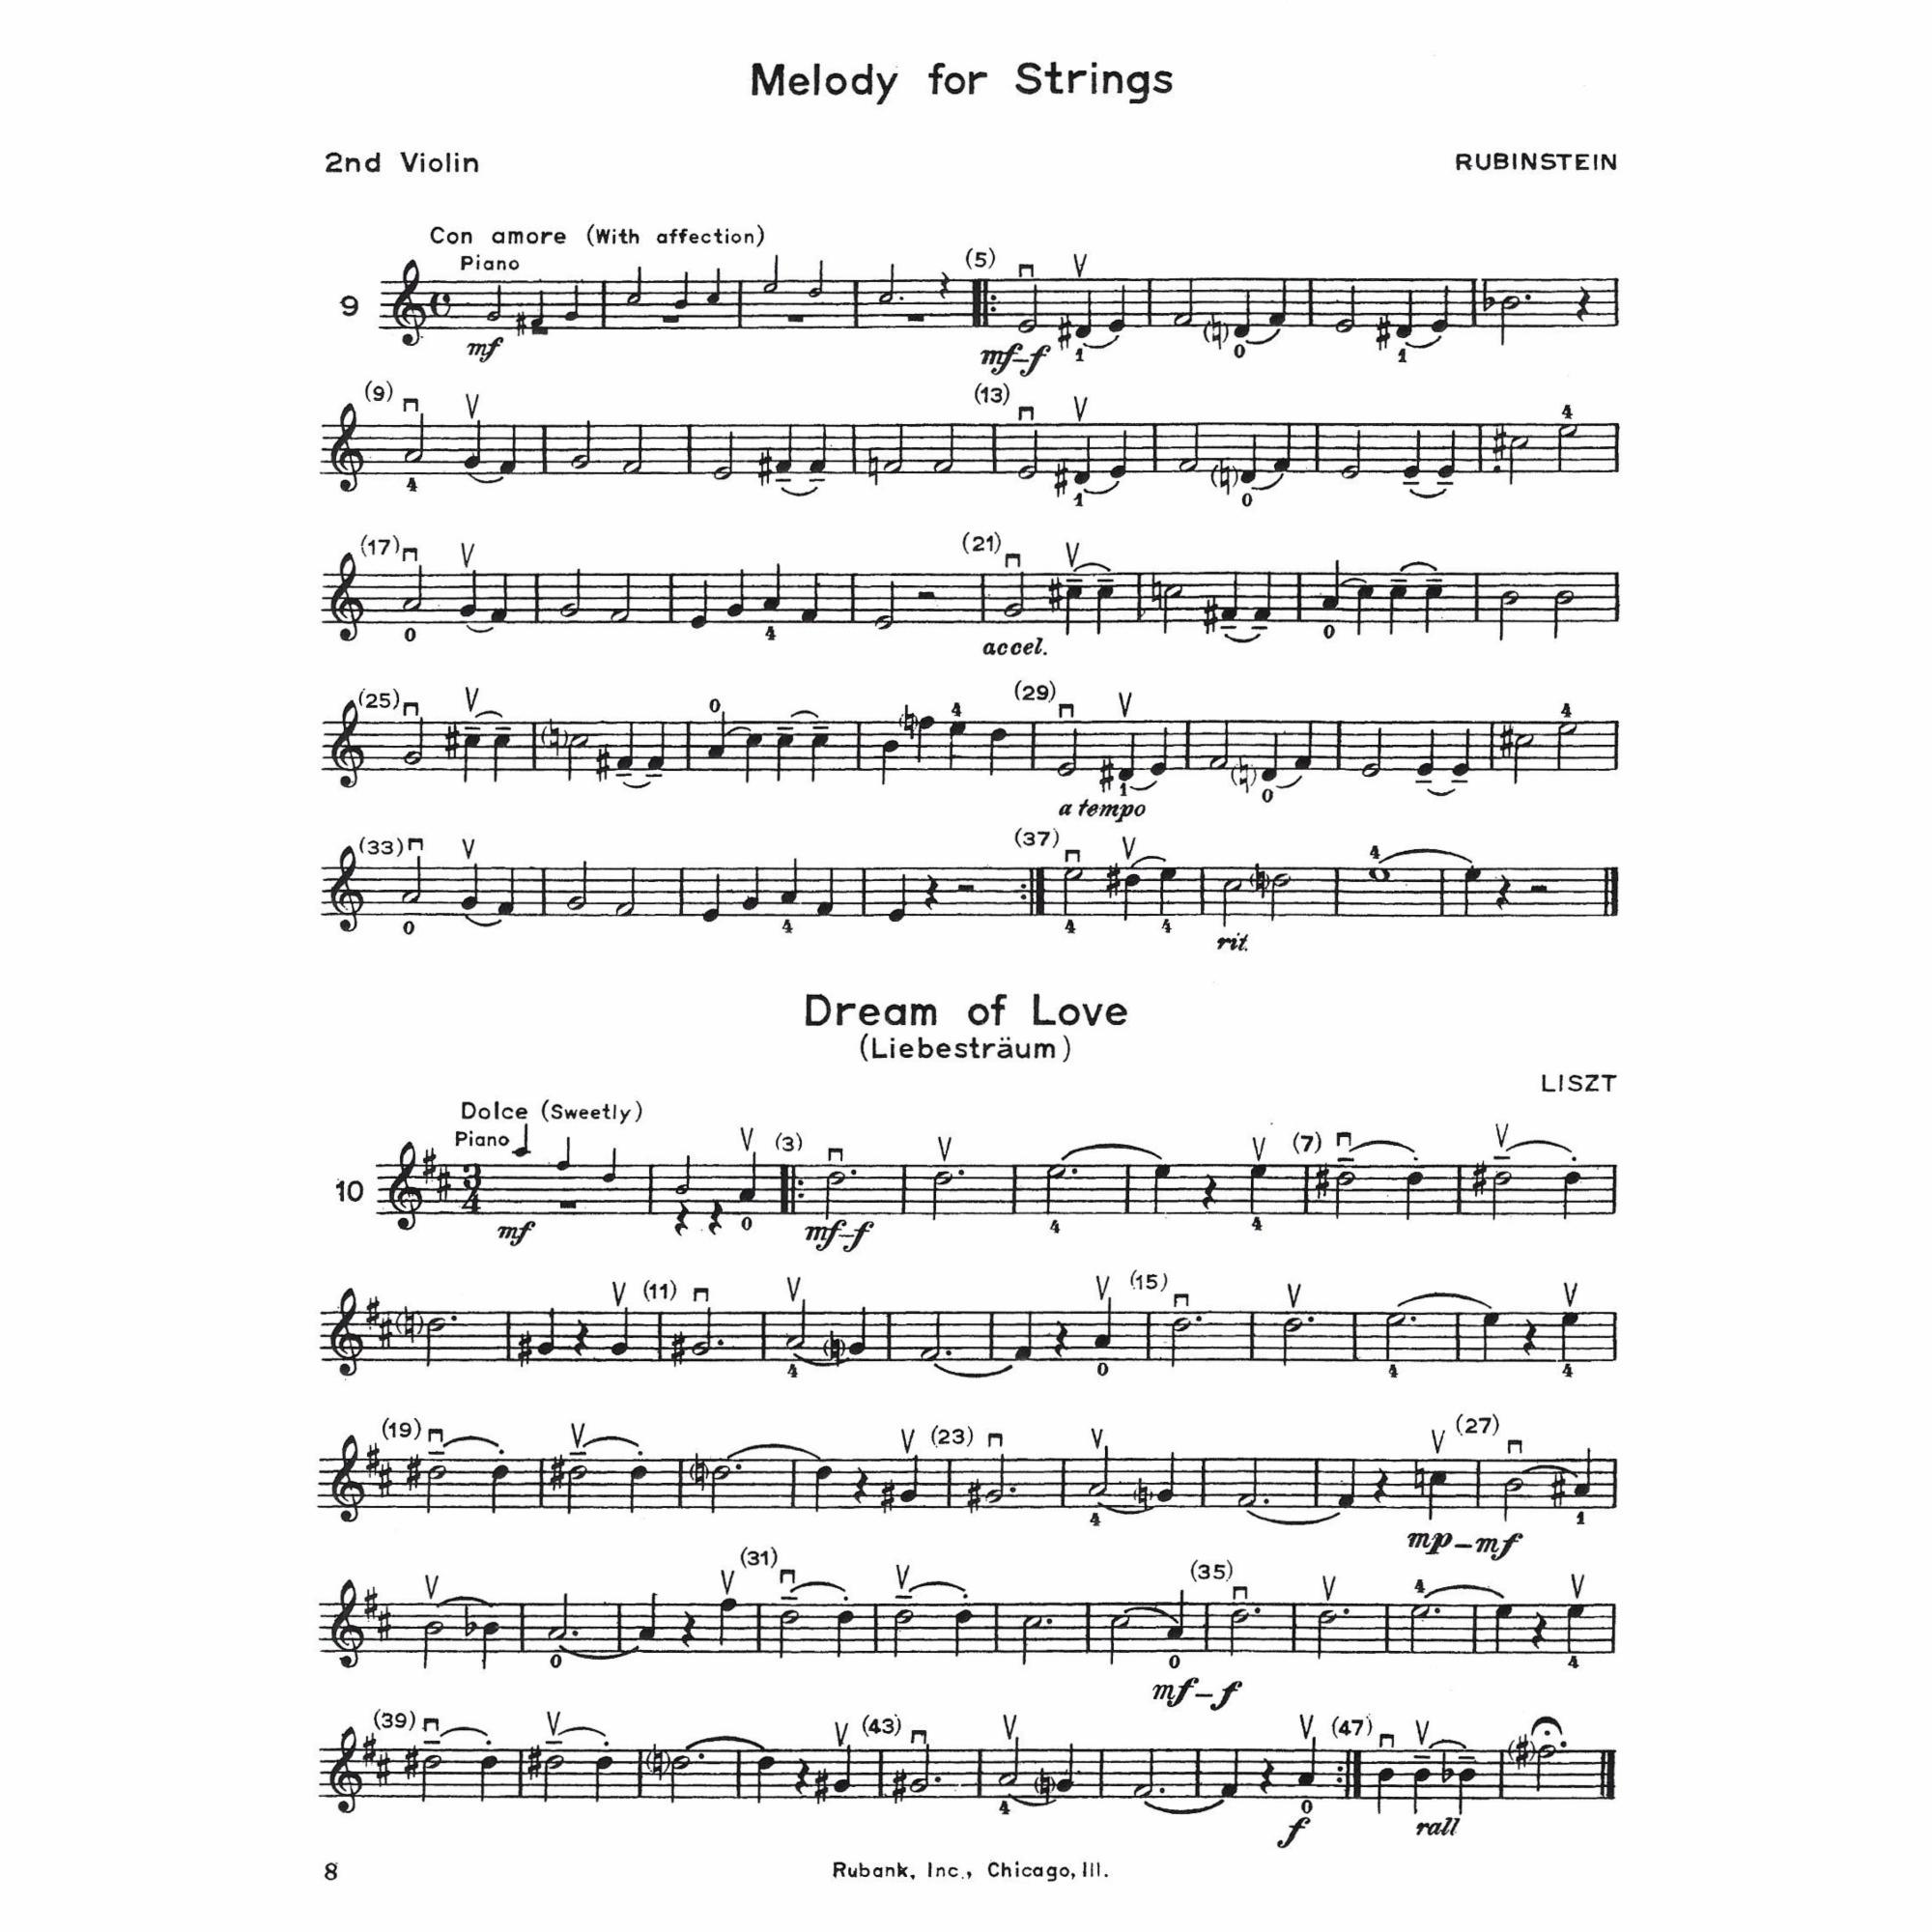 Sample: Violin II (Pg. 8)